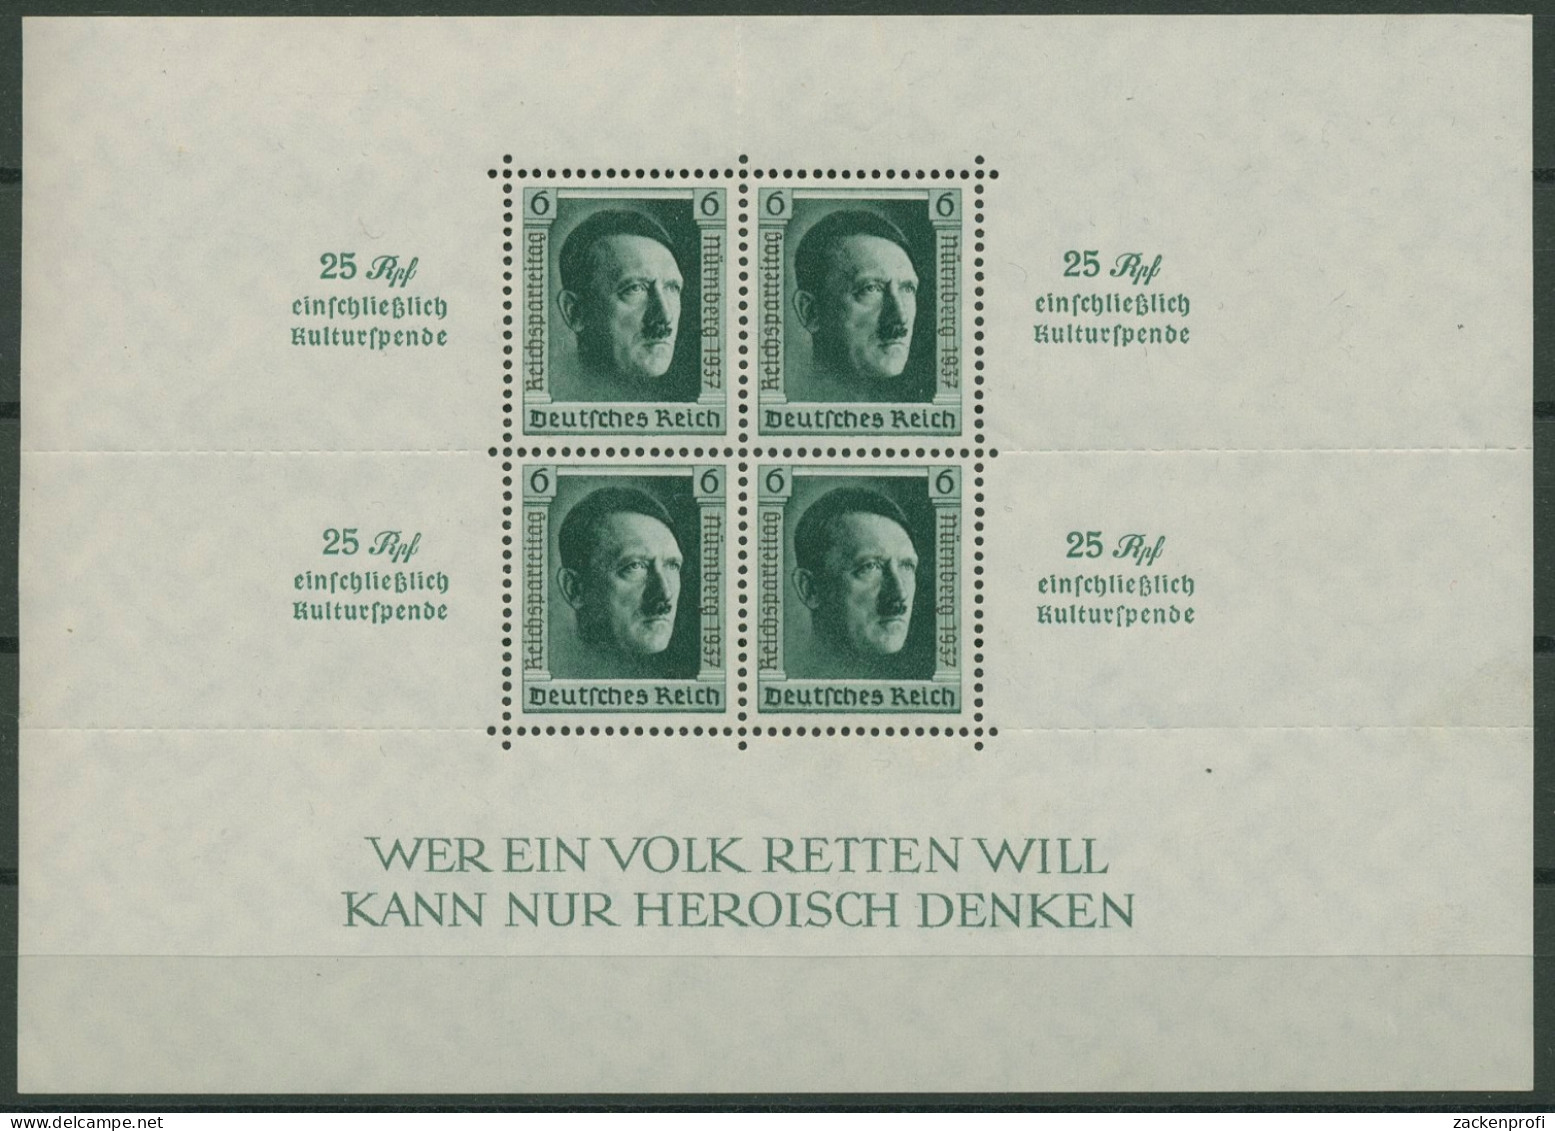 Deutsches Reich 1937 48. Geburtstag Hitler, Reichsparteitag Block 11 Postfrisch - Blocks & Sheetlets